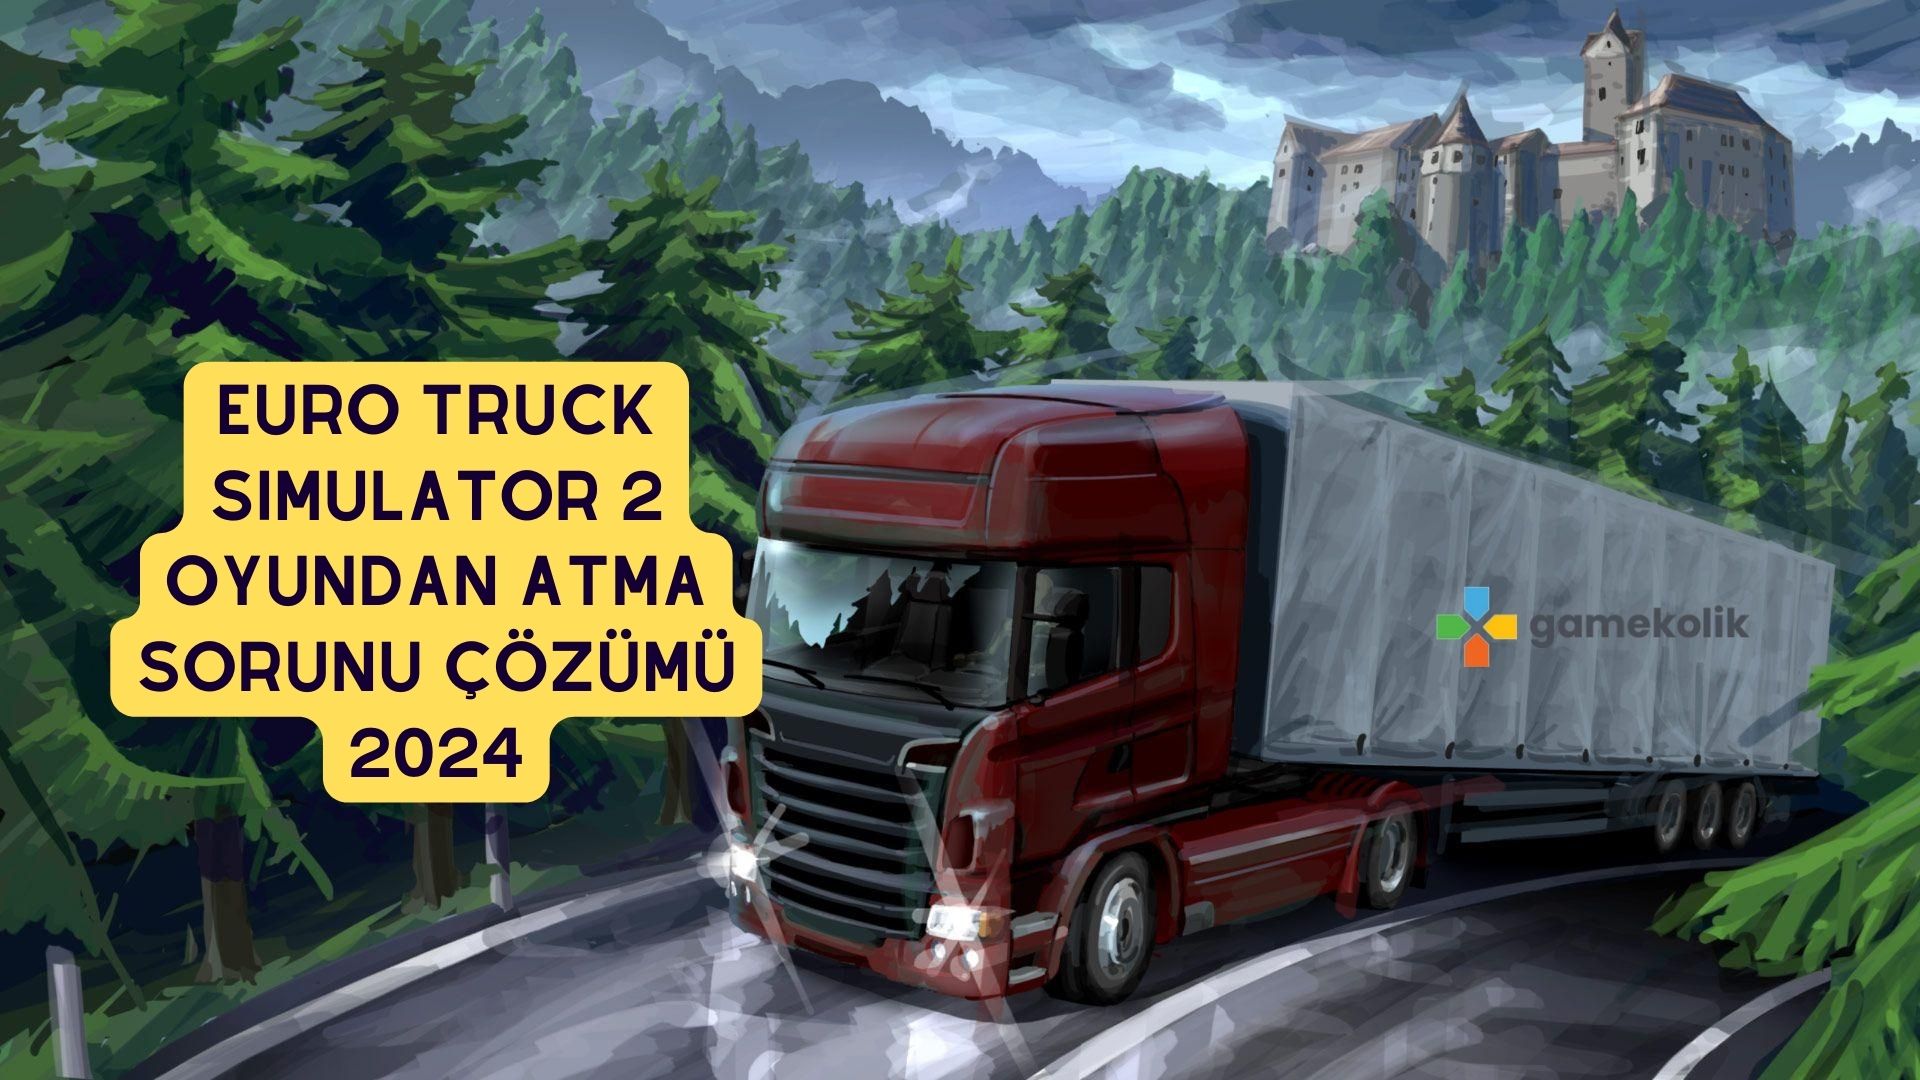 Euro Truck Simulator 2 Oyundan Atma Sorunu Çözümü 2024